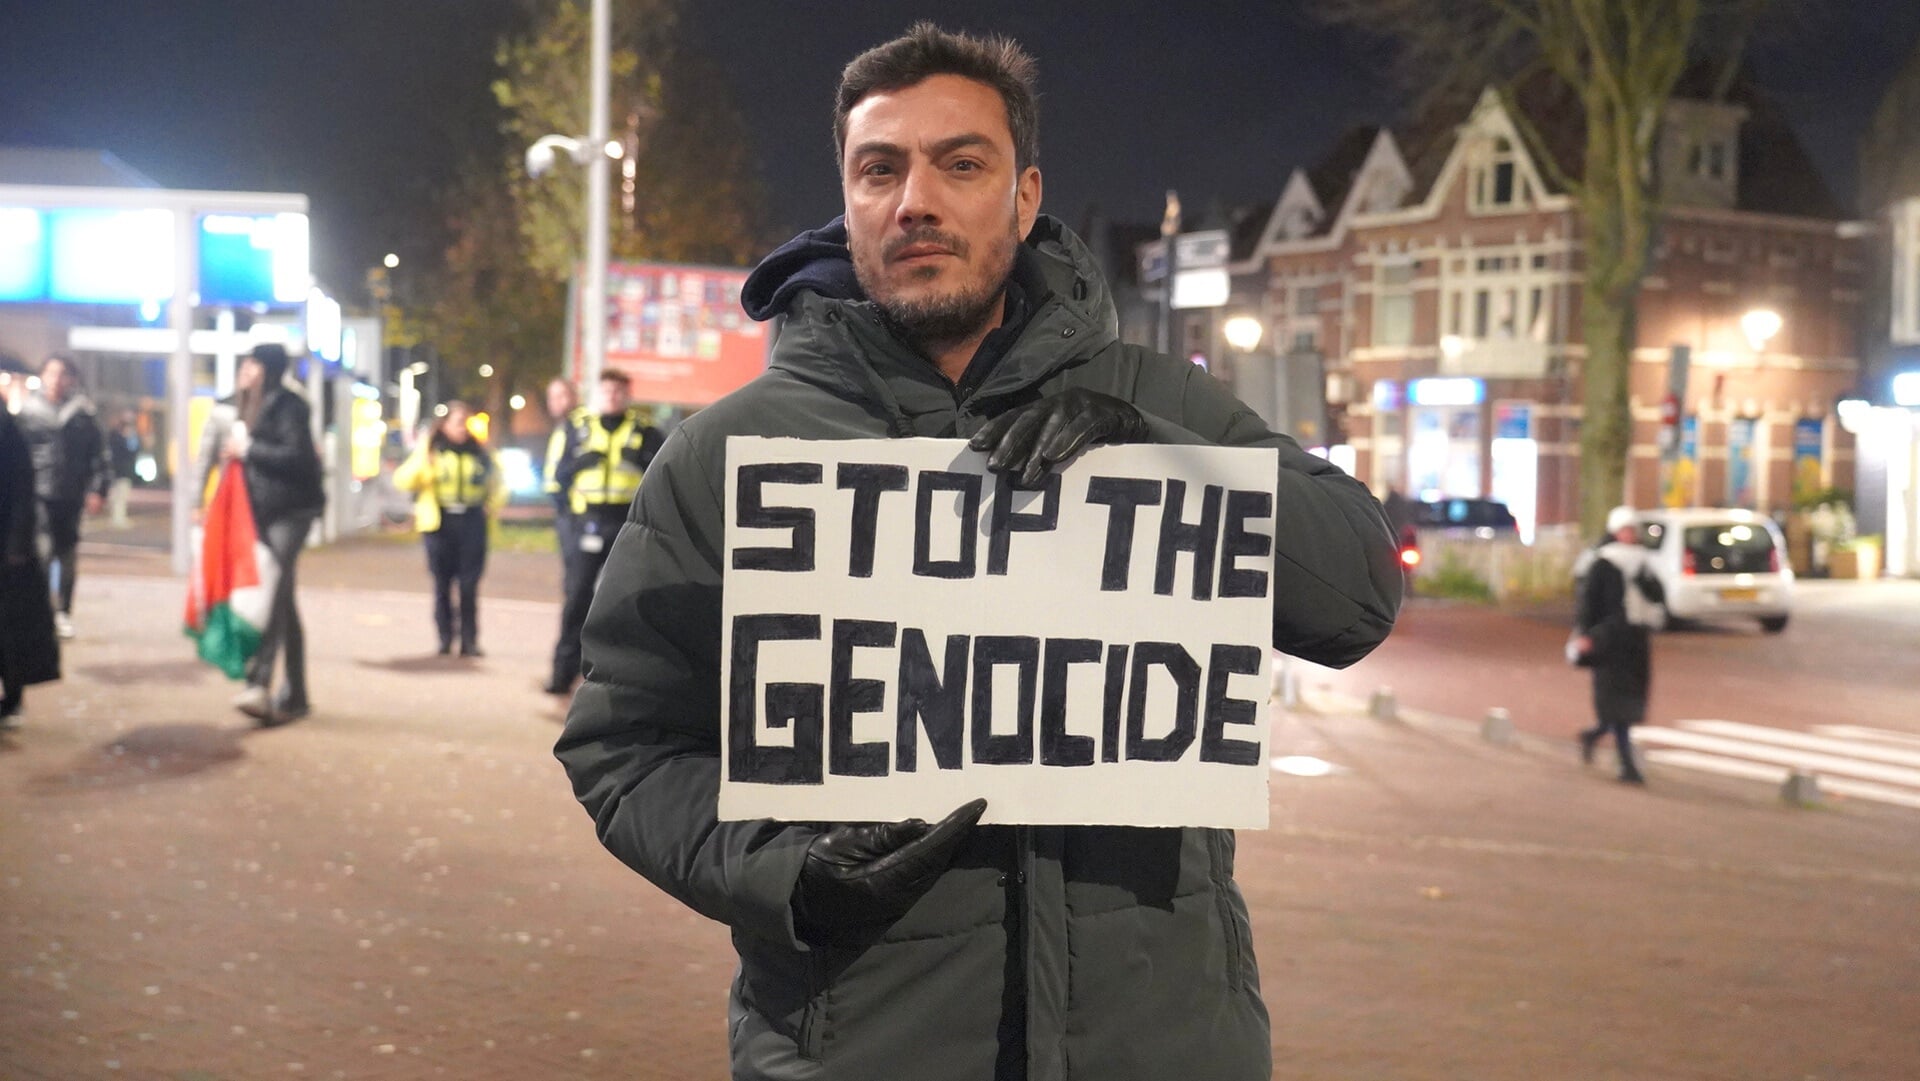 De boodschap is duidelijk: Stop the genocide.